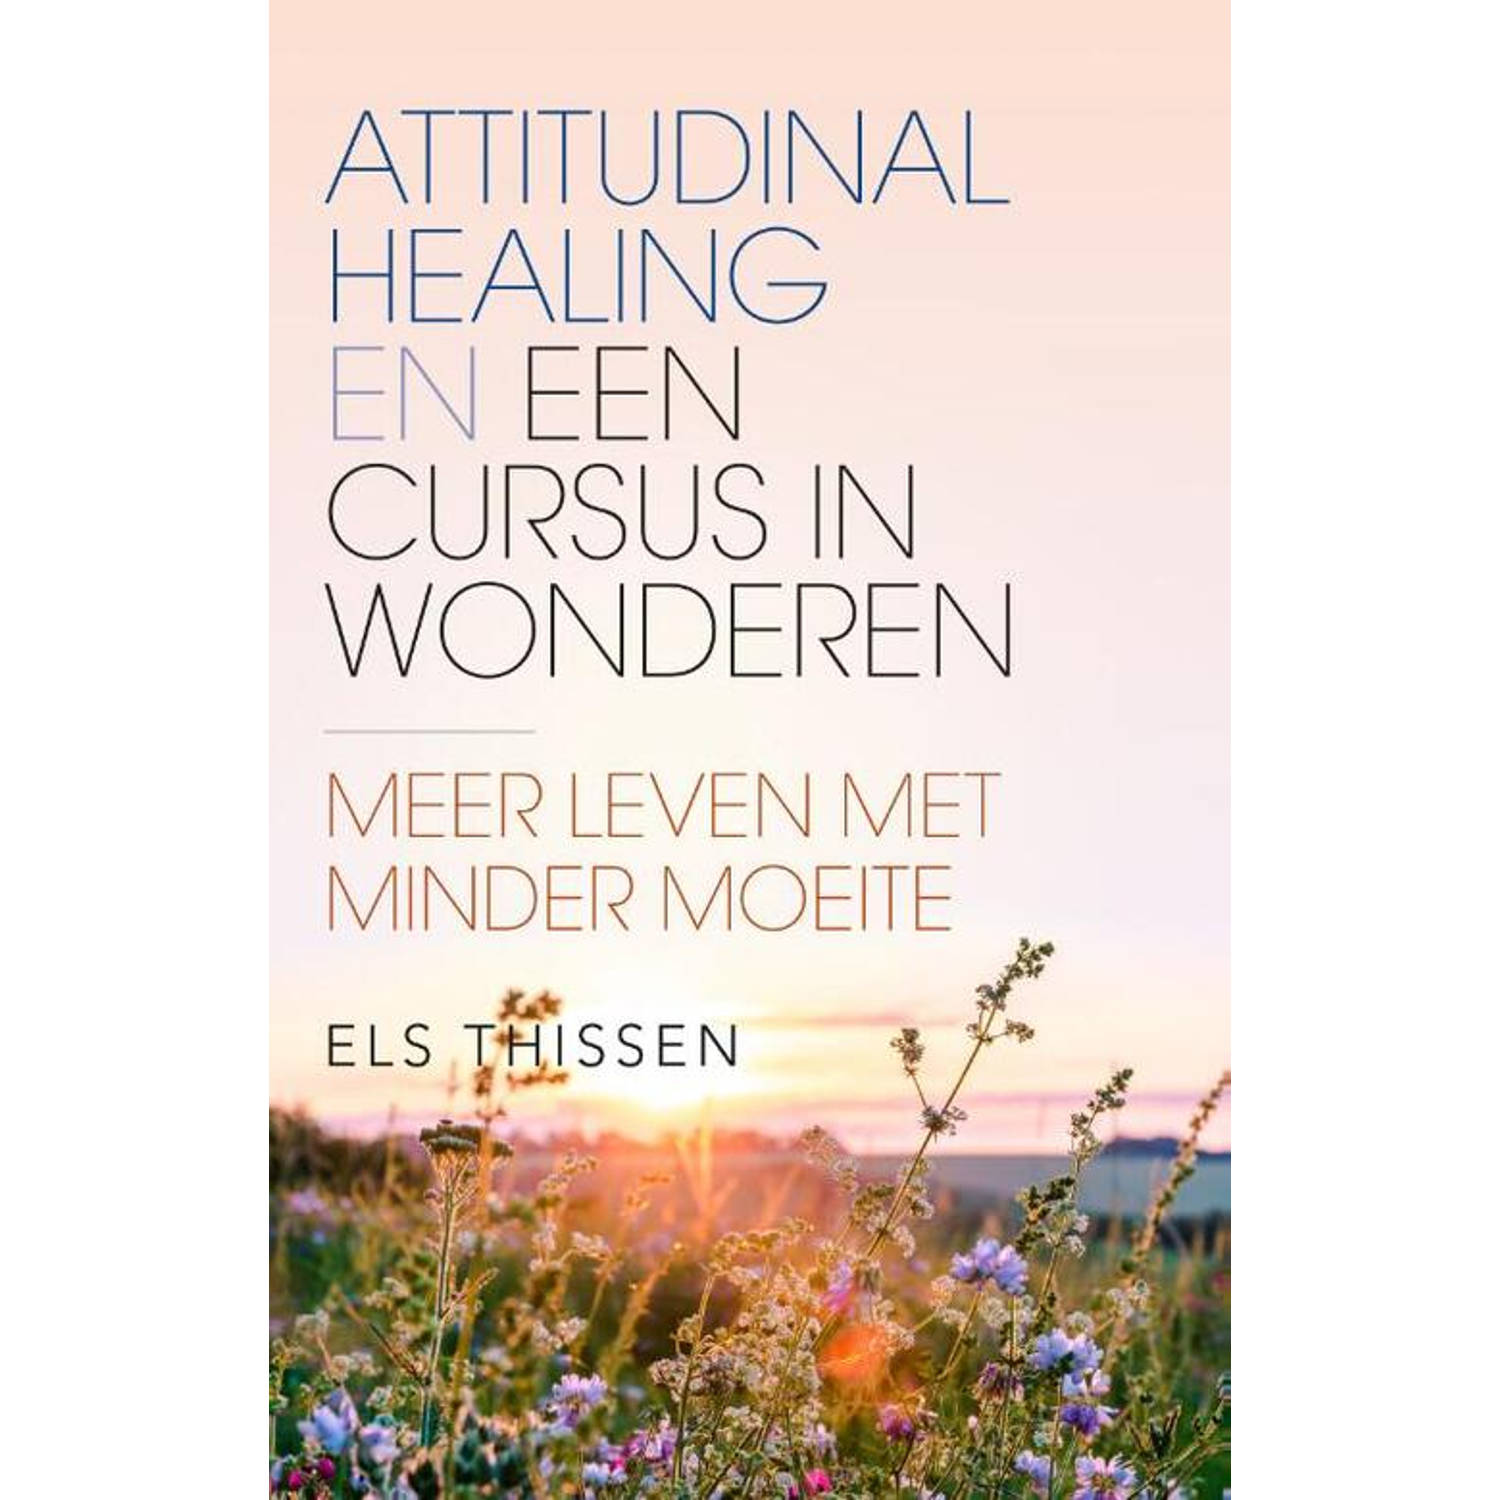 Attitudinal Healing En De Cursus In Wonderen